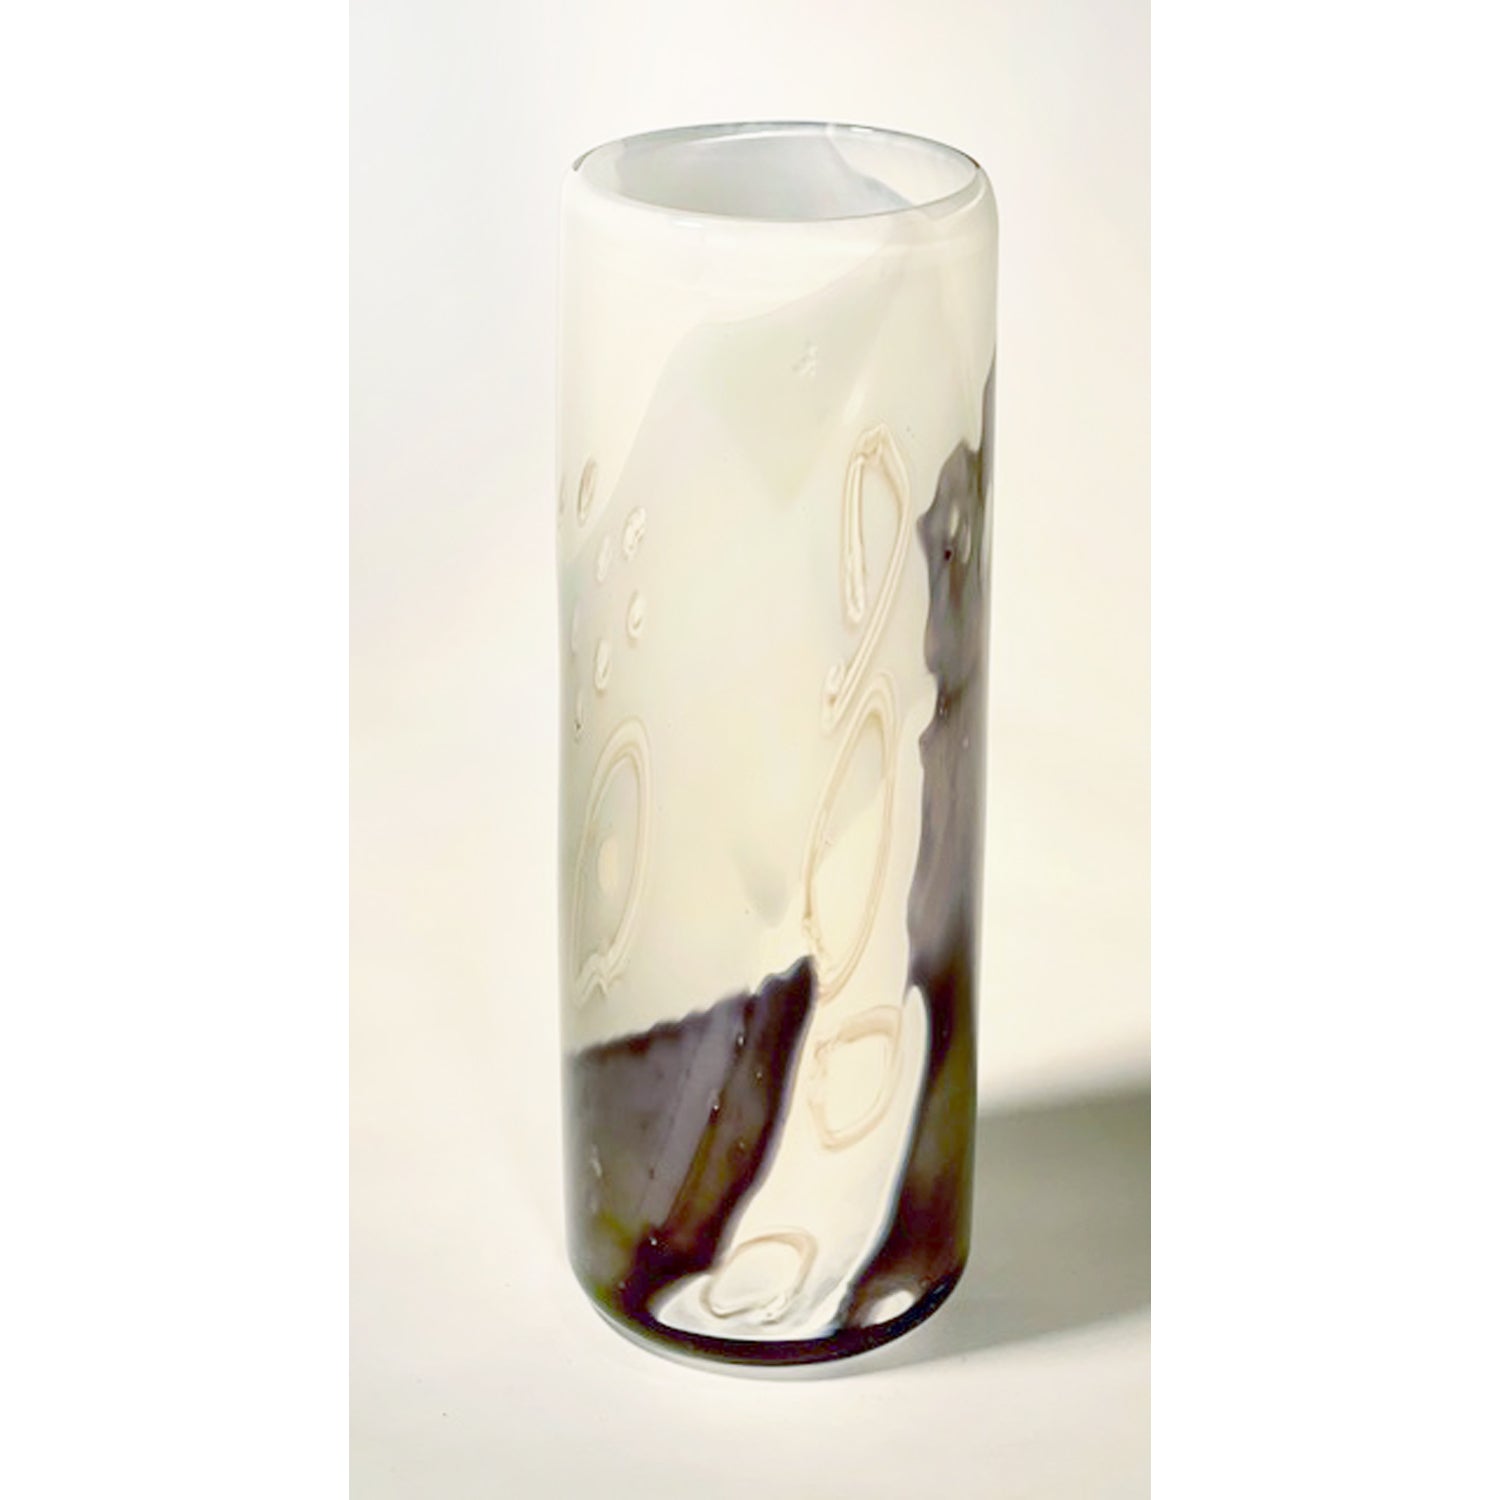 Sue Rankin - Sm Purple Grey Cylinder Vase, 8" x 2.5" x 2.5"